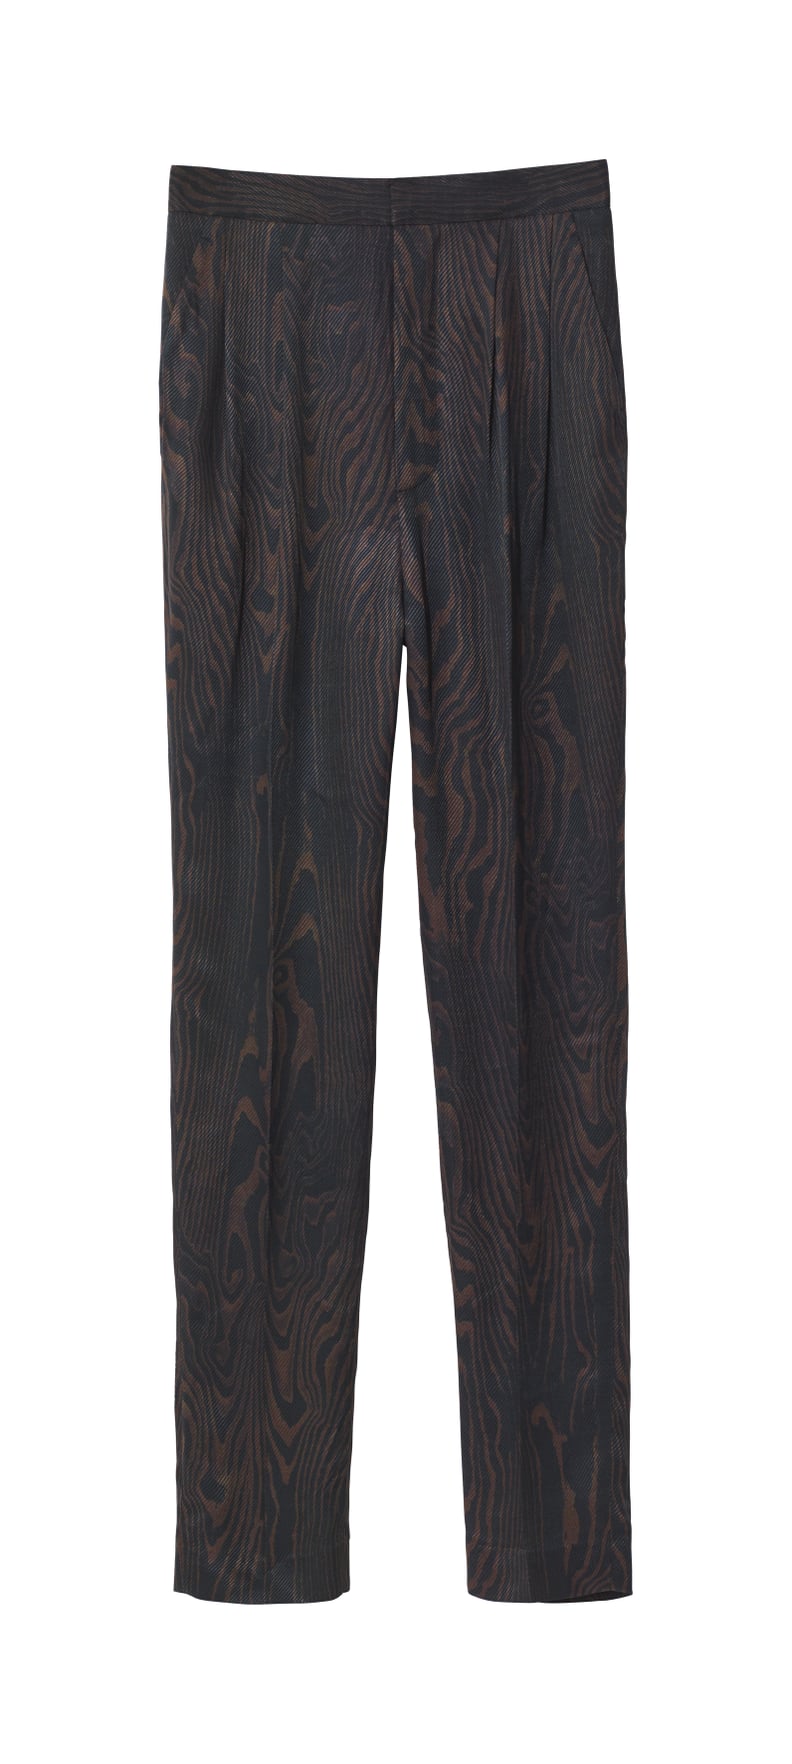 H&M Patterned Suit Pants